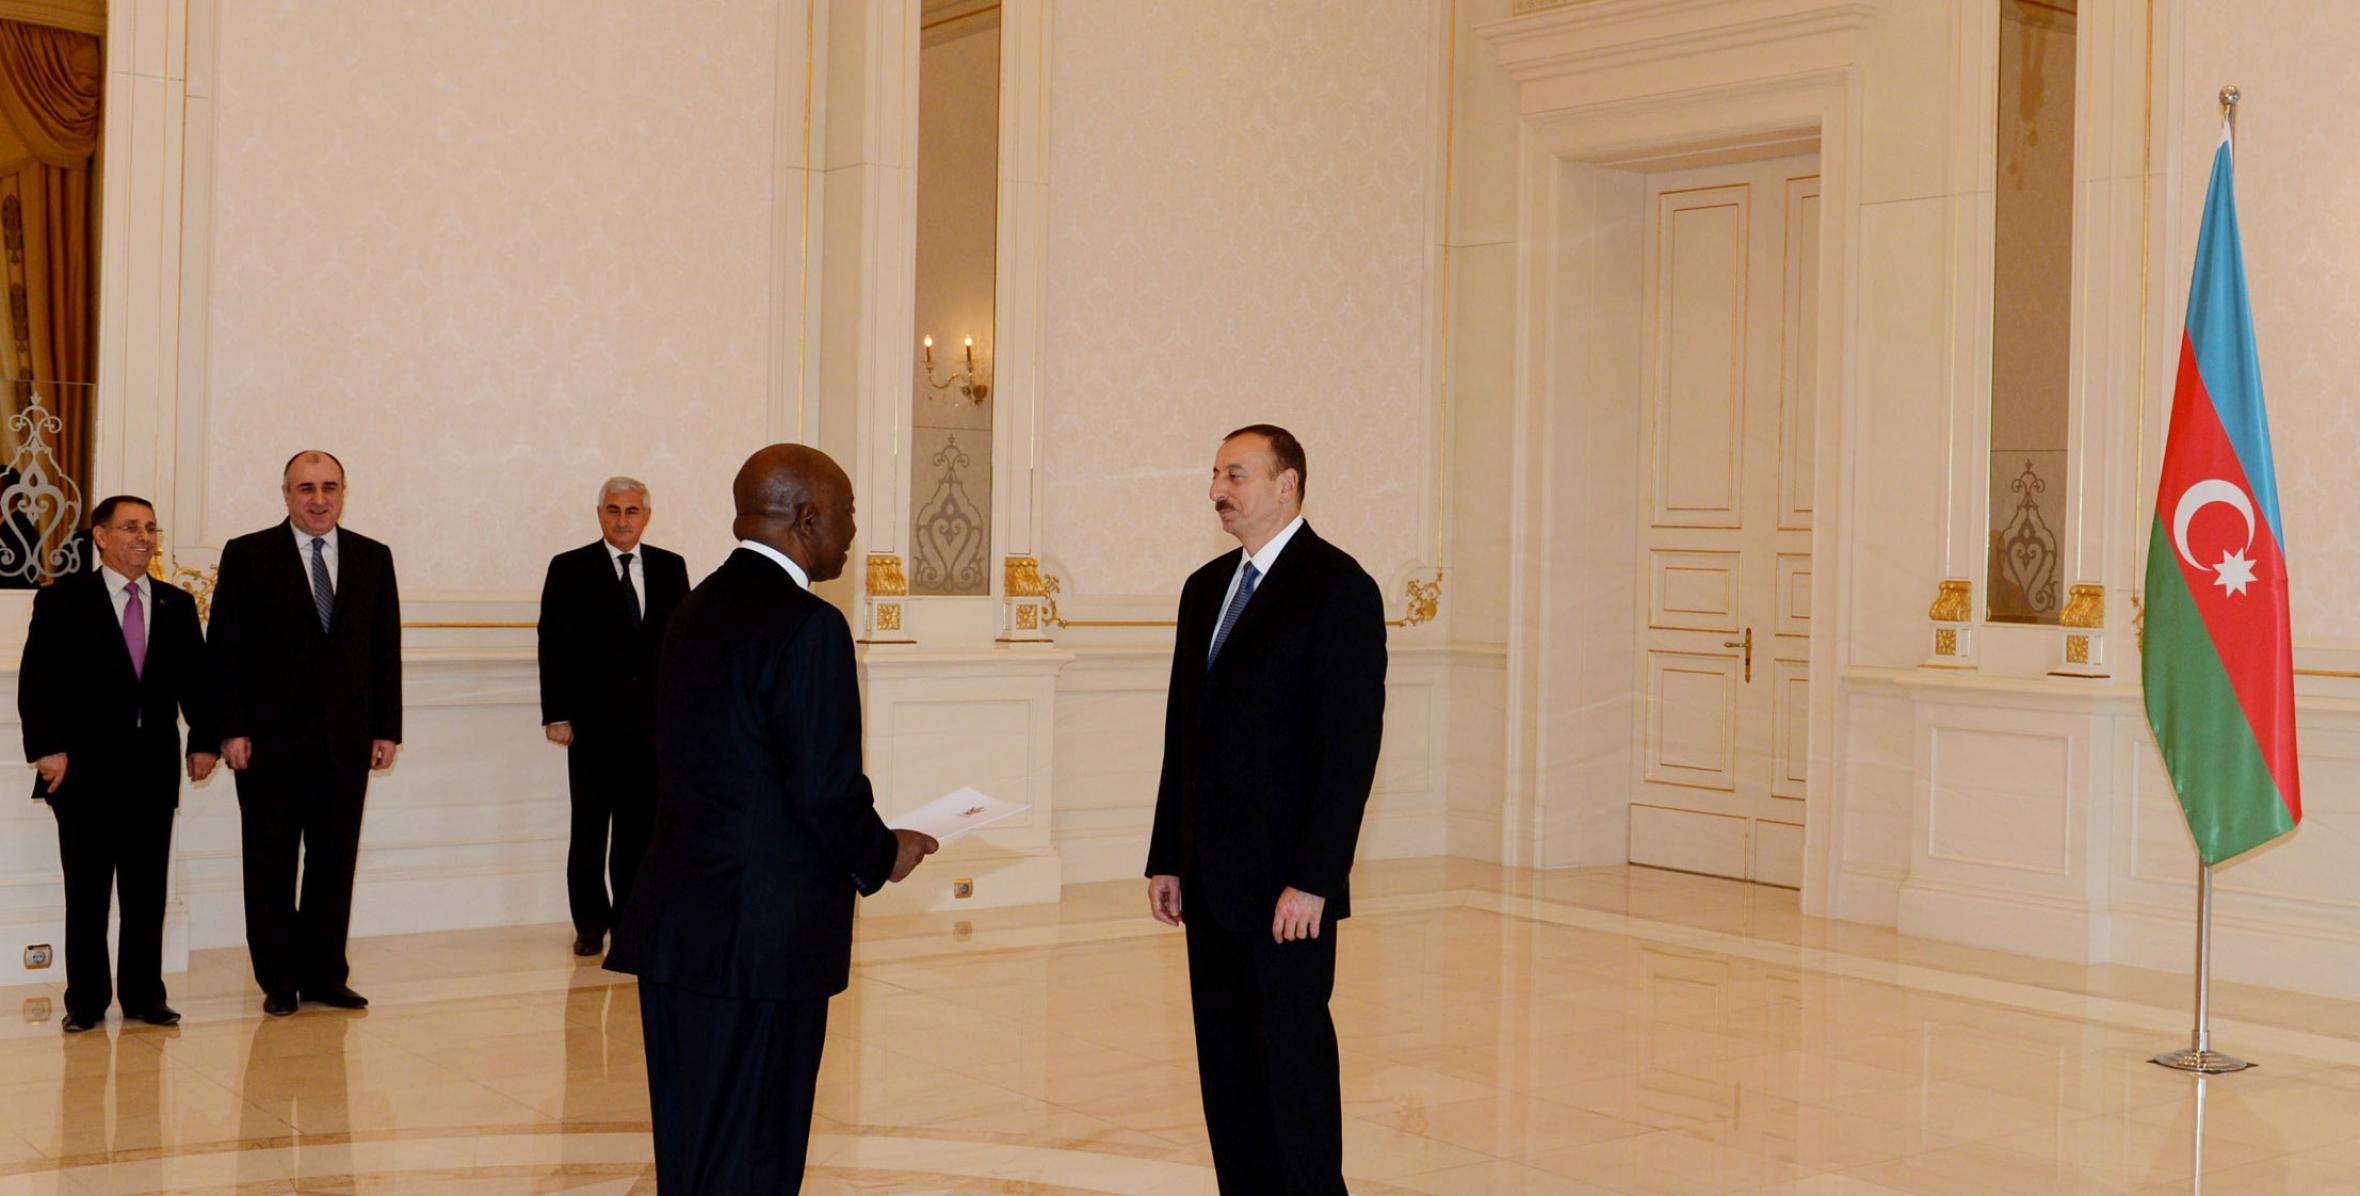 Ильхам Алиев принял верительные грамоты новоназначенного посла Зимбабве в Азербайджане